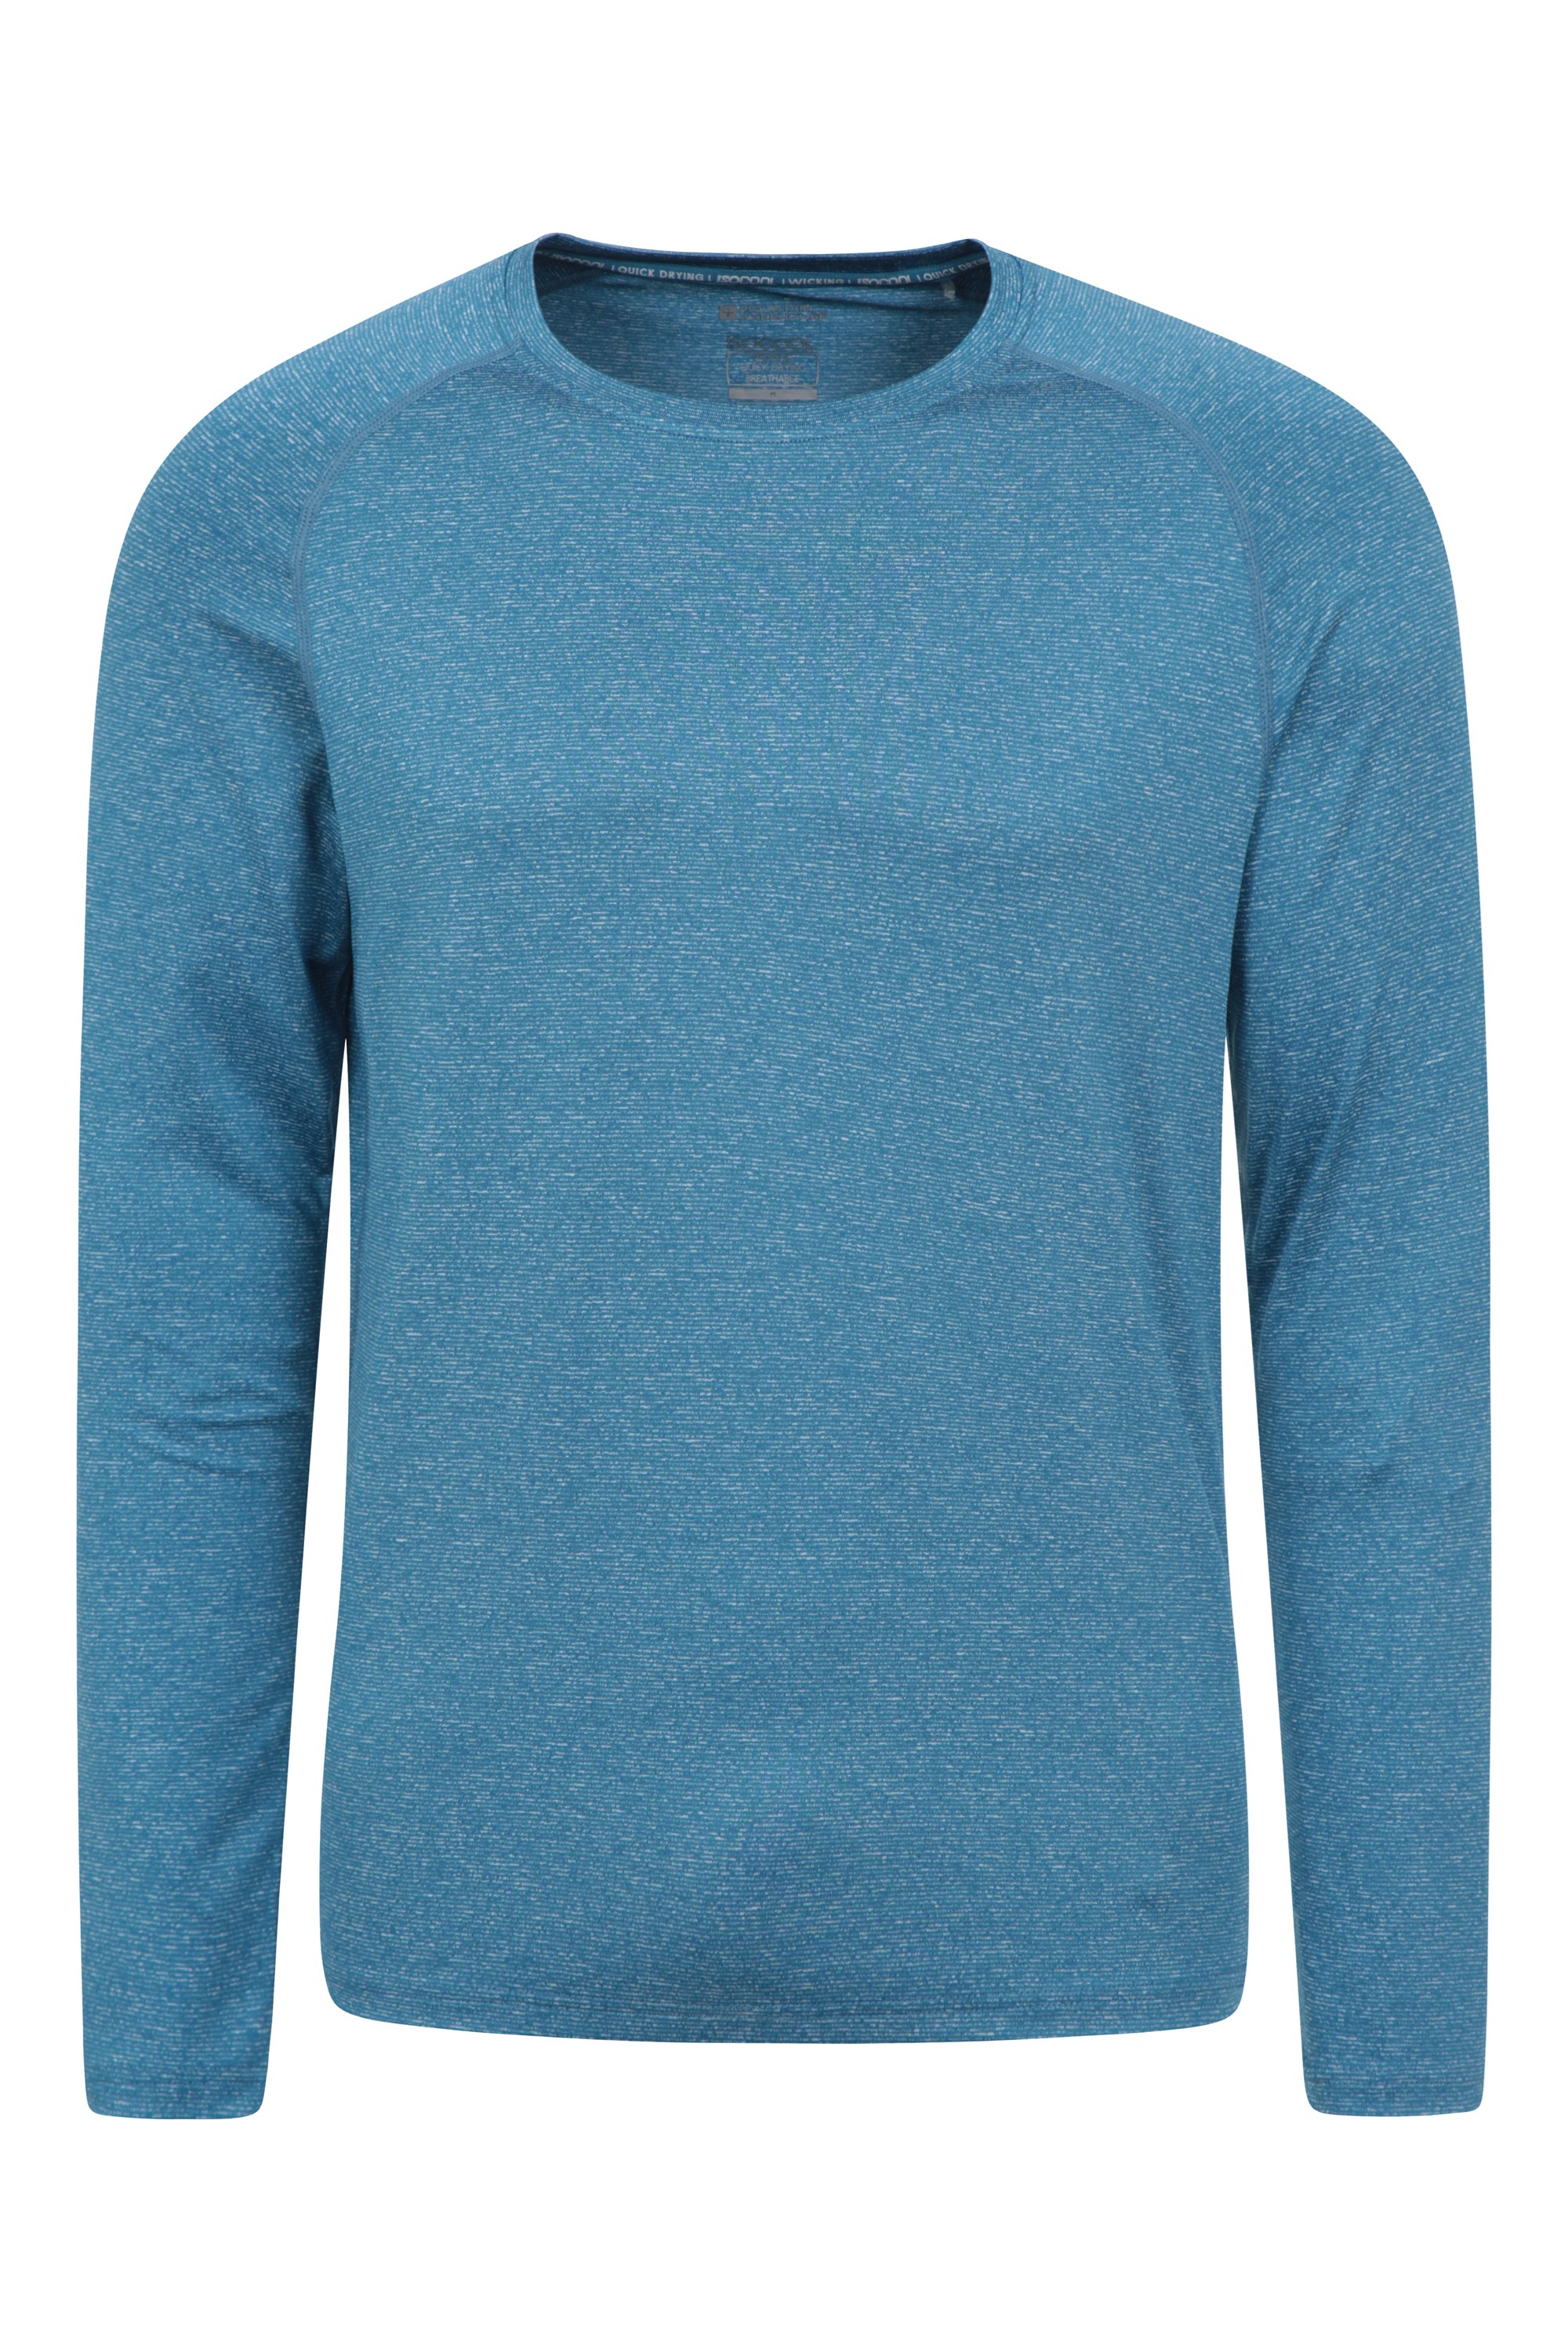 Invierno camiseta antibacteriana de secado rápido Mountain Warehouse Camiseta térmica interior de lana merina con manga larga para hombre Camiseta ligera 